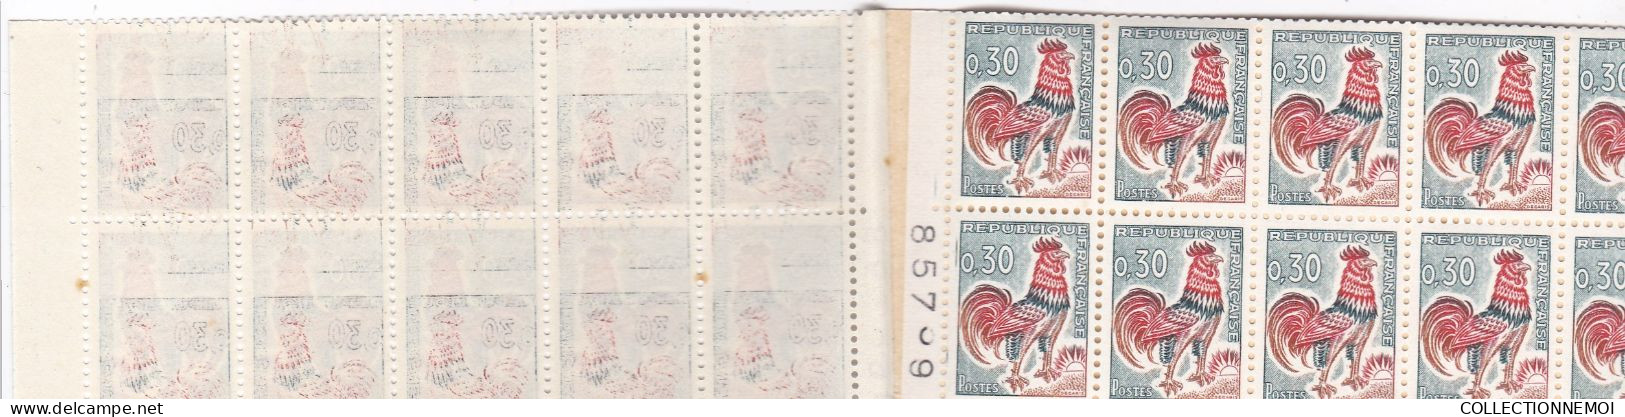 carnet COQ 30 centimes ,, 2 carnets de 20 timbres ,,adherence sur 1,à voir et collé un peu de travers